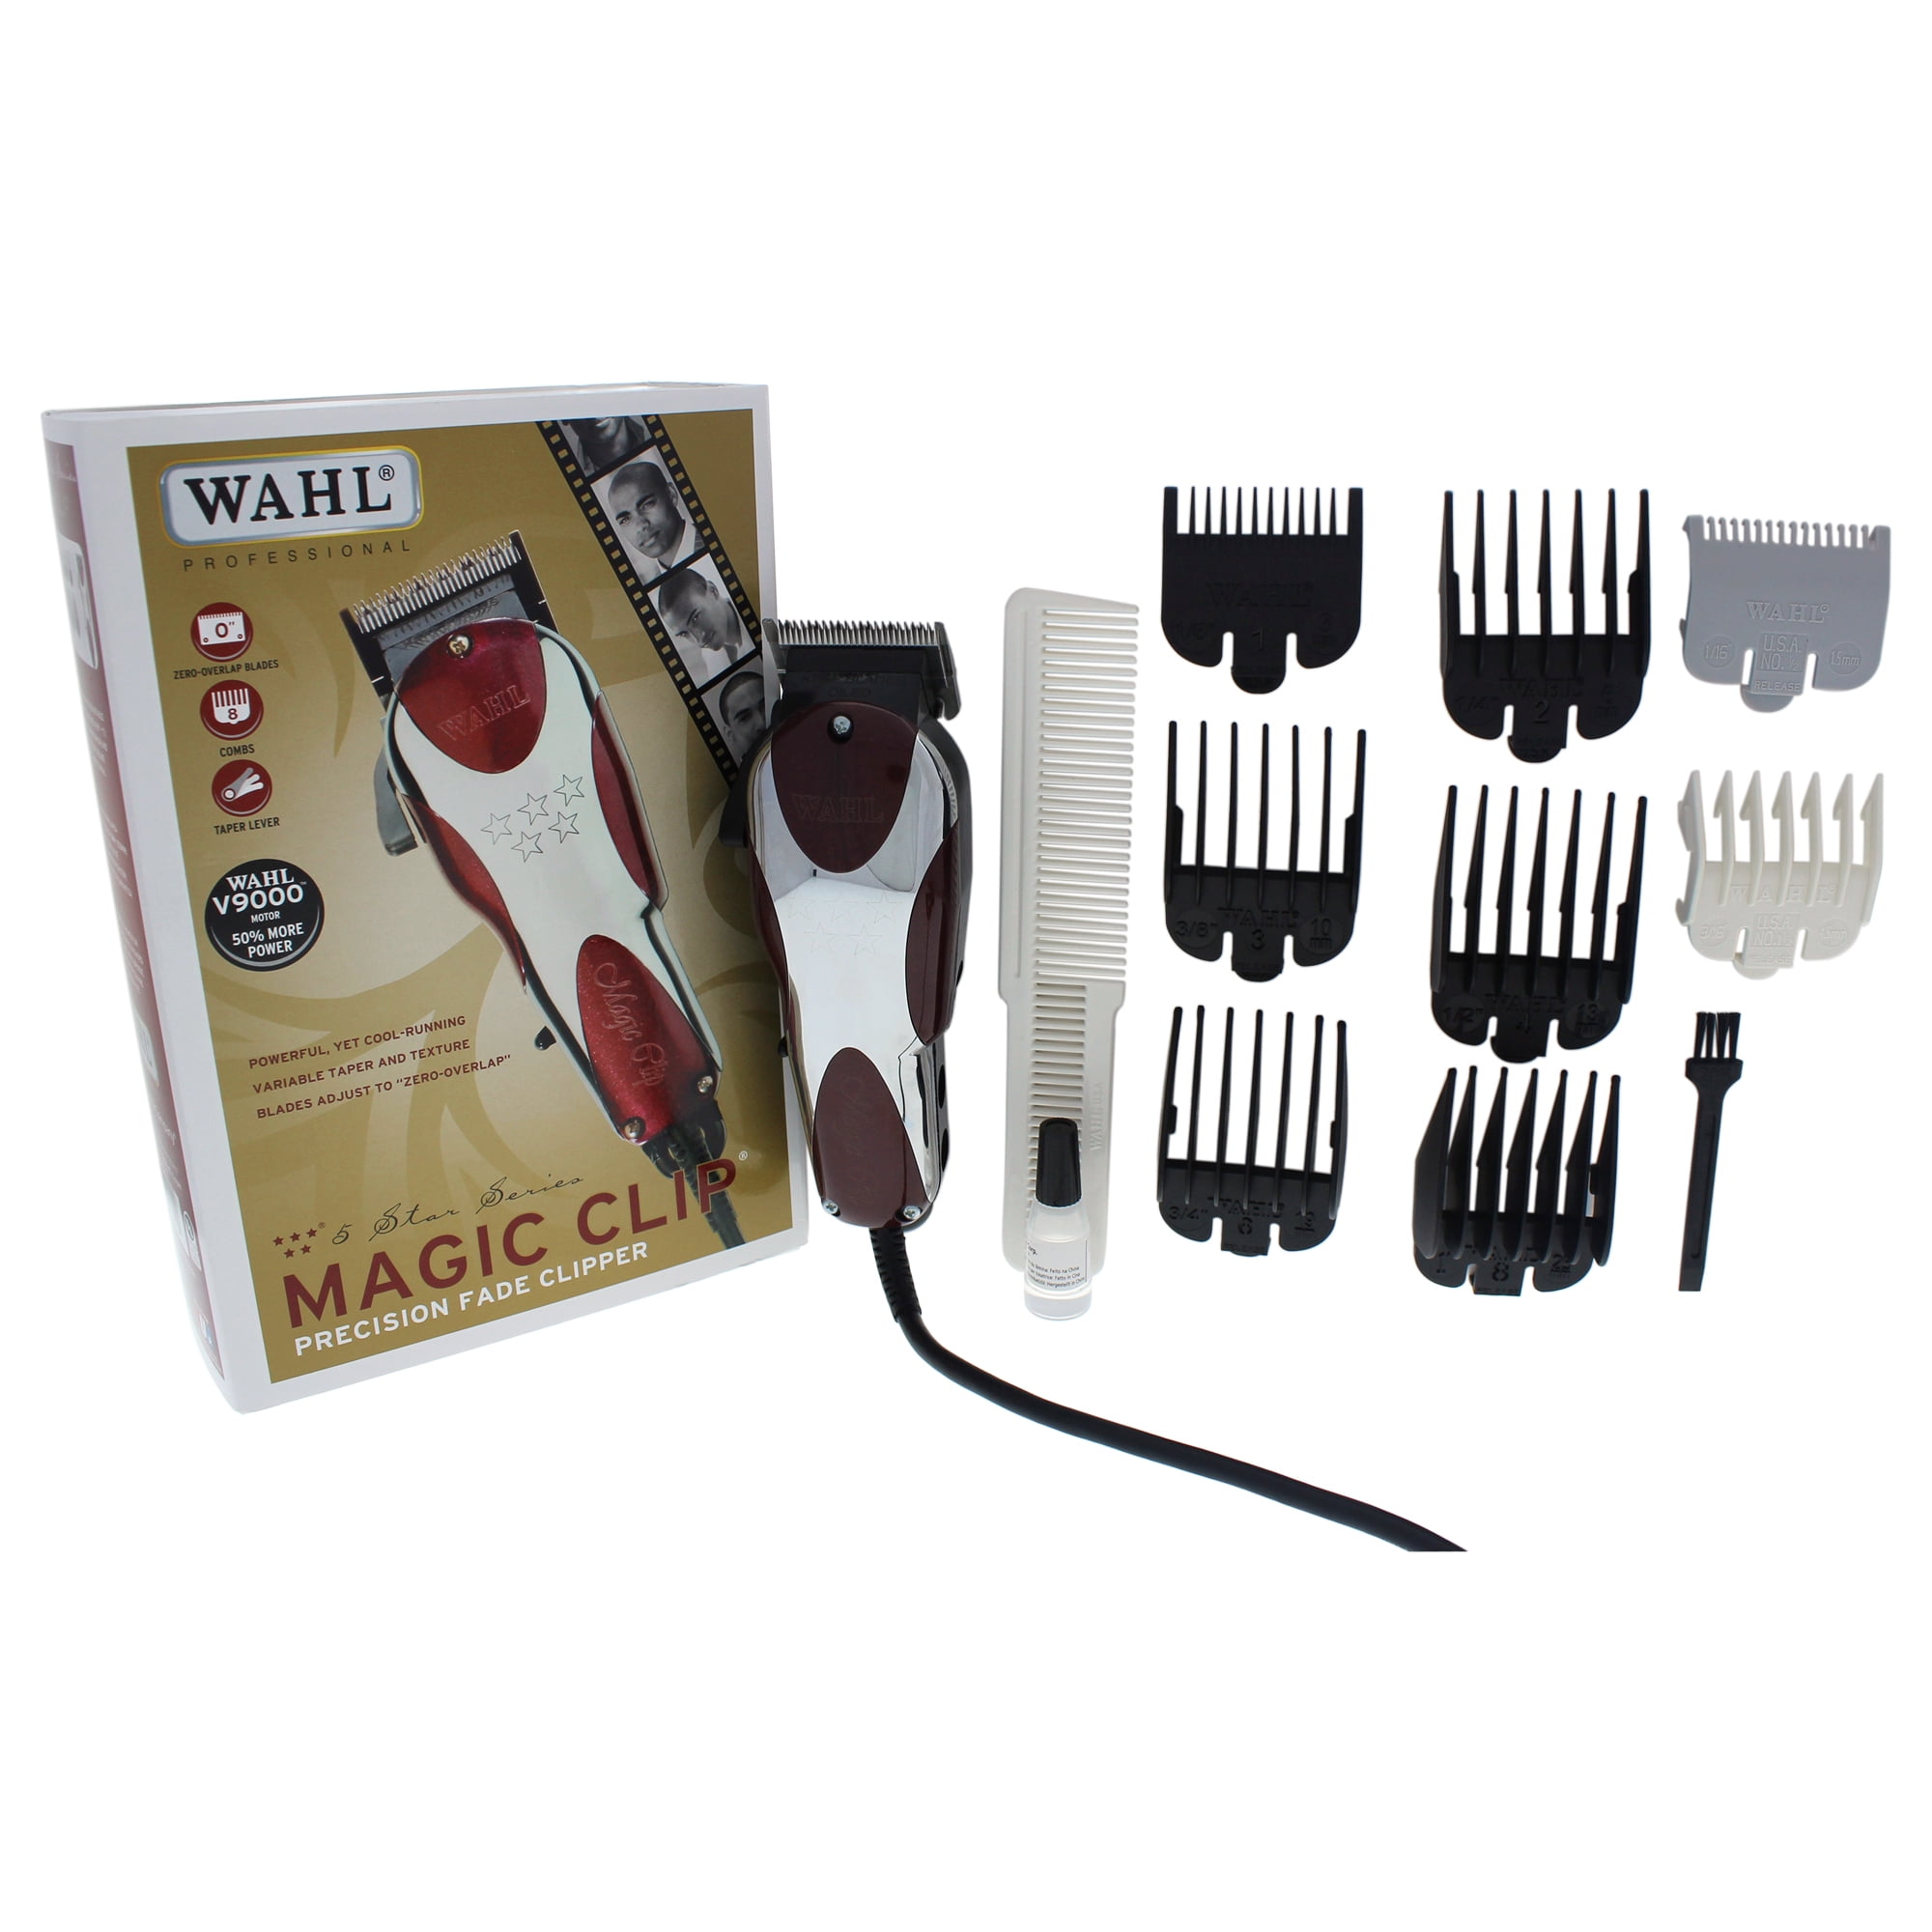 wahl professional 5 star magic clip clipper 8451